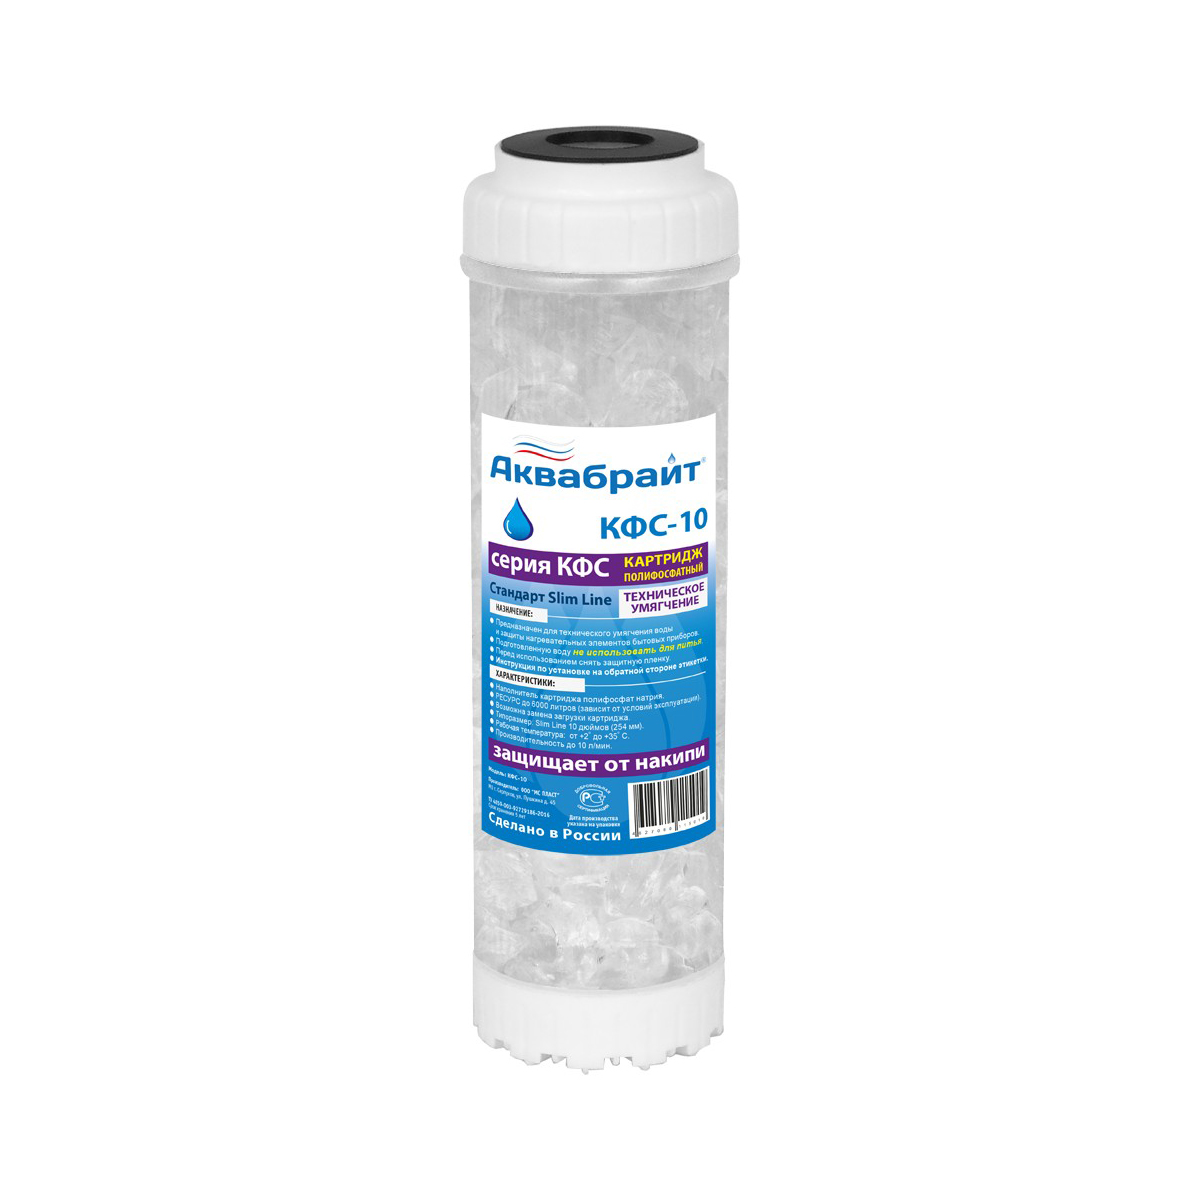 Картридж для умягчения воды с полифосфатом кфс-10 (1/25) "аквабрайт"